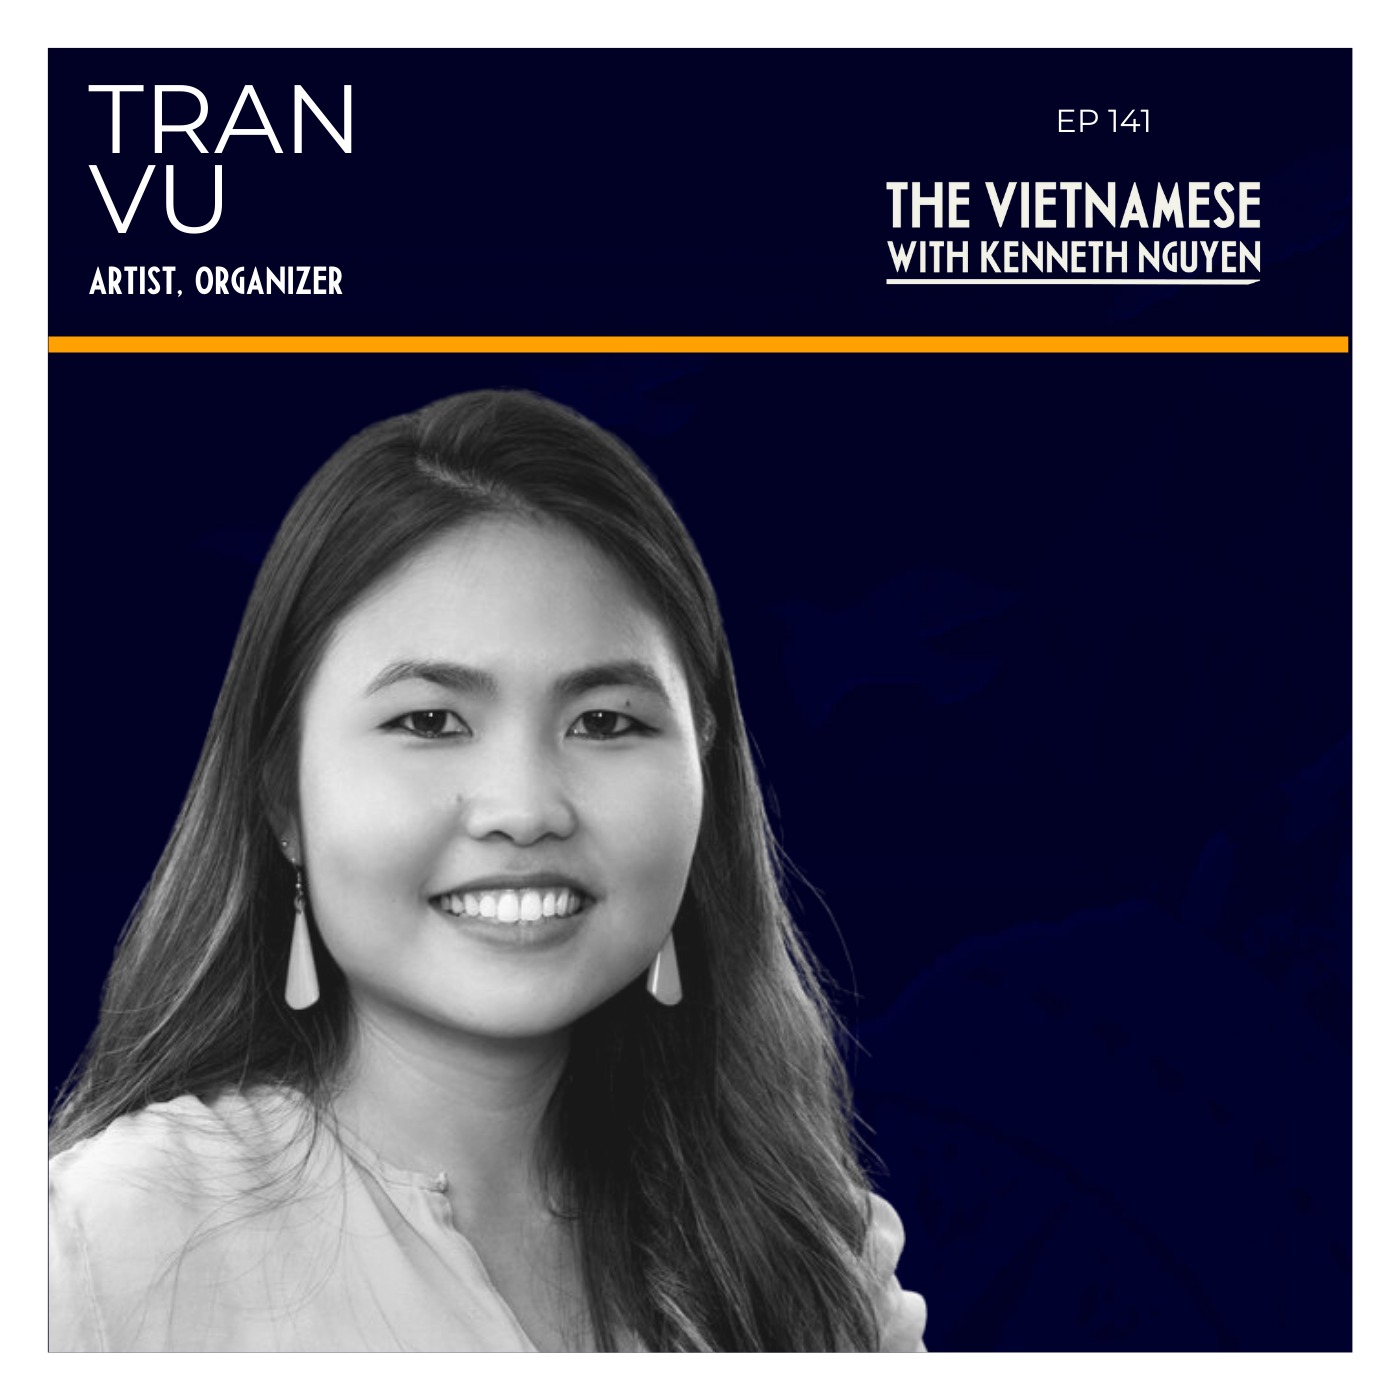 141 - Tran Vu - Artist and Organizer